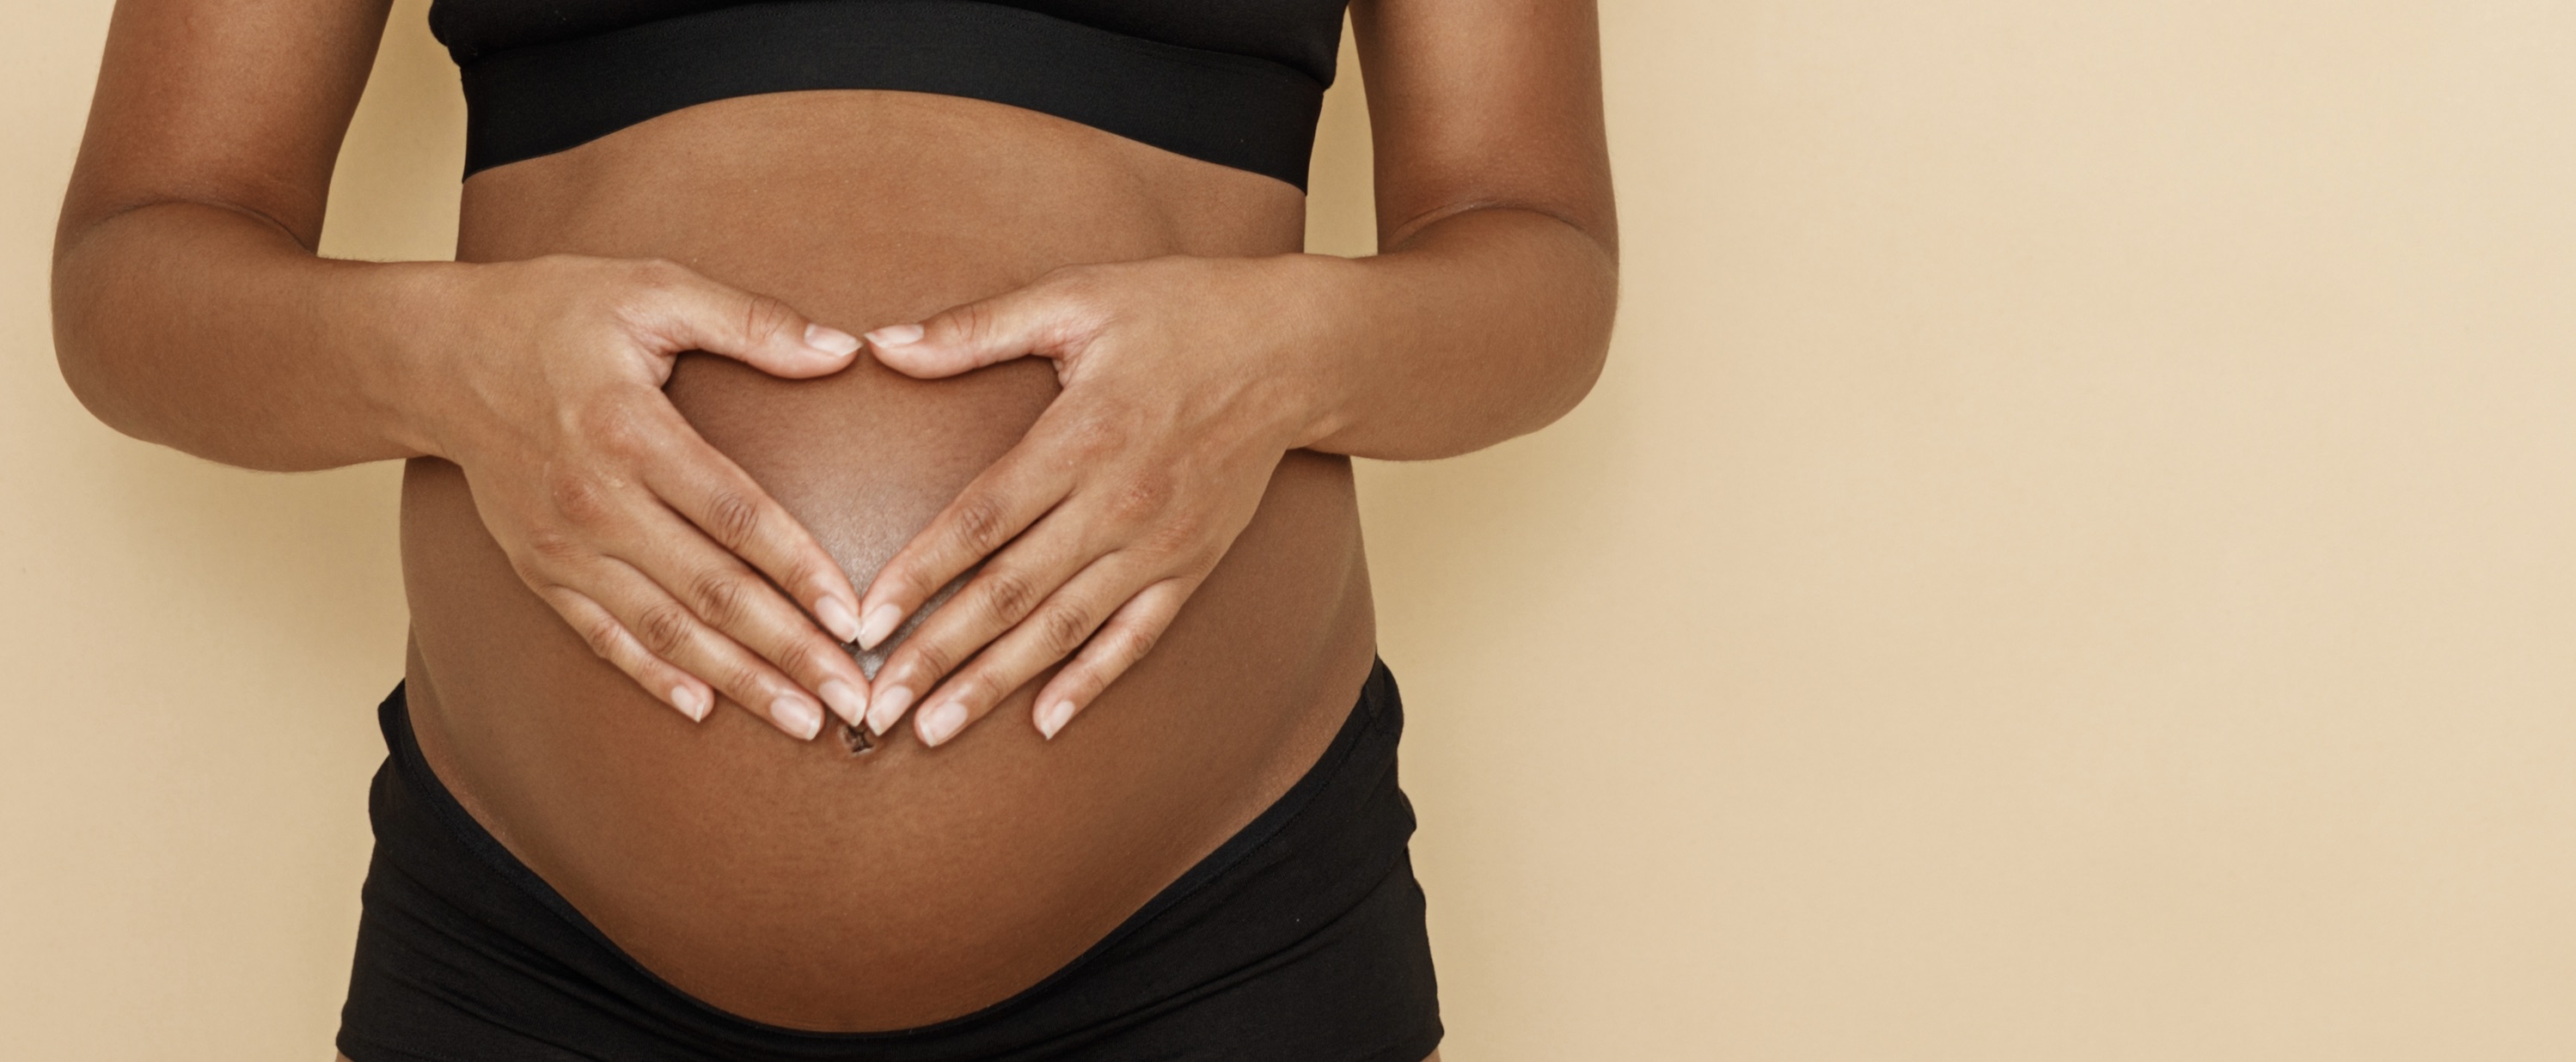 9 standaard, maar rete-irritante opmerkingen die je als zwangere naar je hoofd geslingerd krijgt